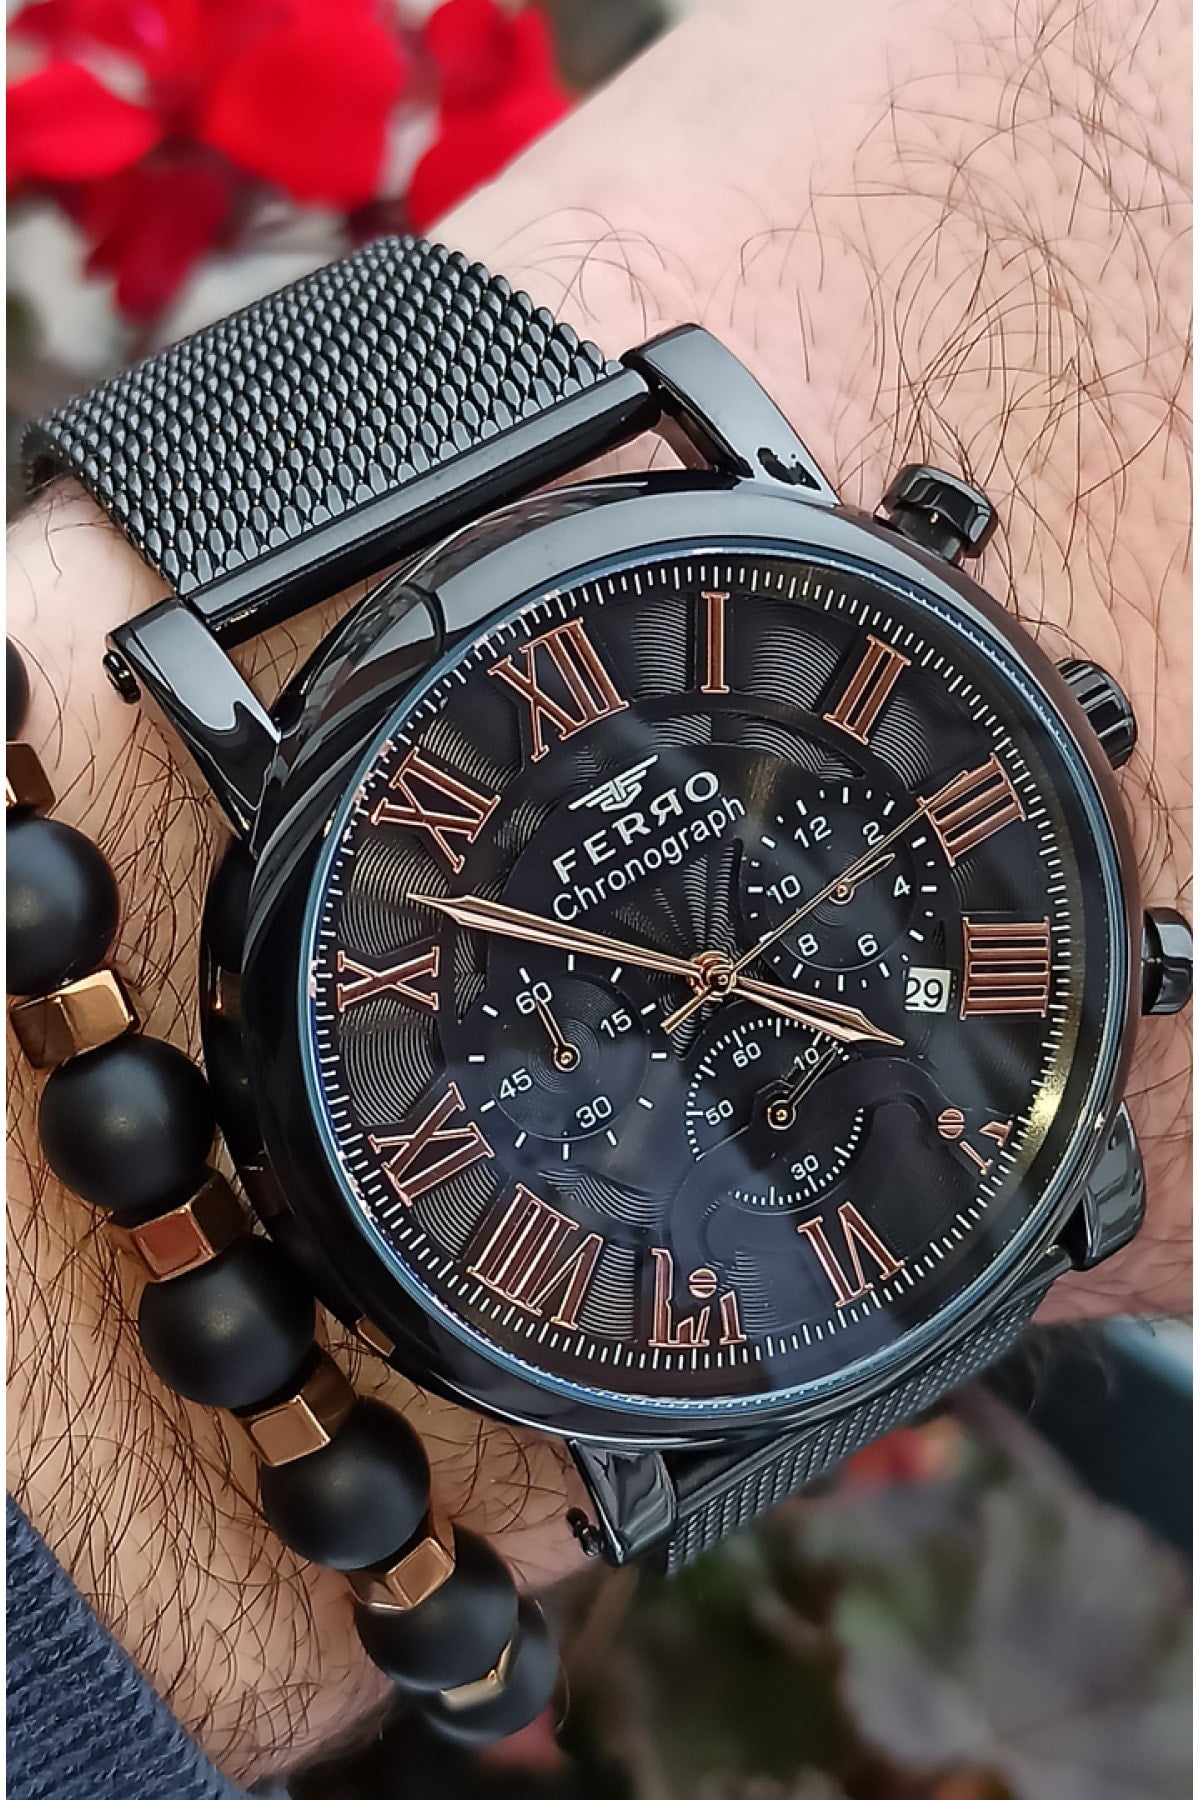 Chronograph Functions Active Silver Men's Wristwatch Bracelet